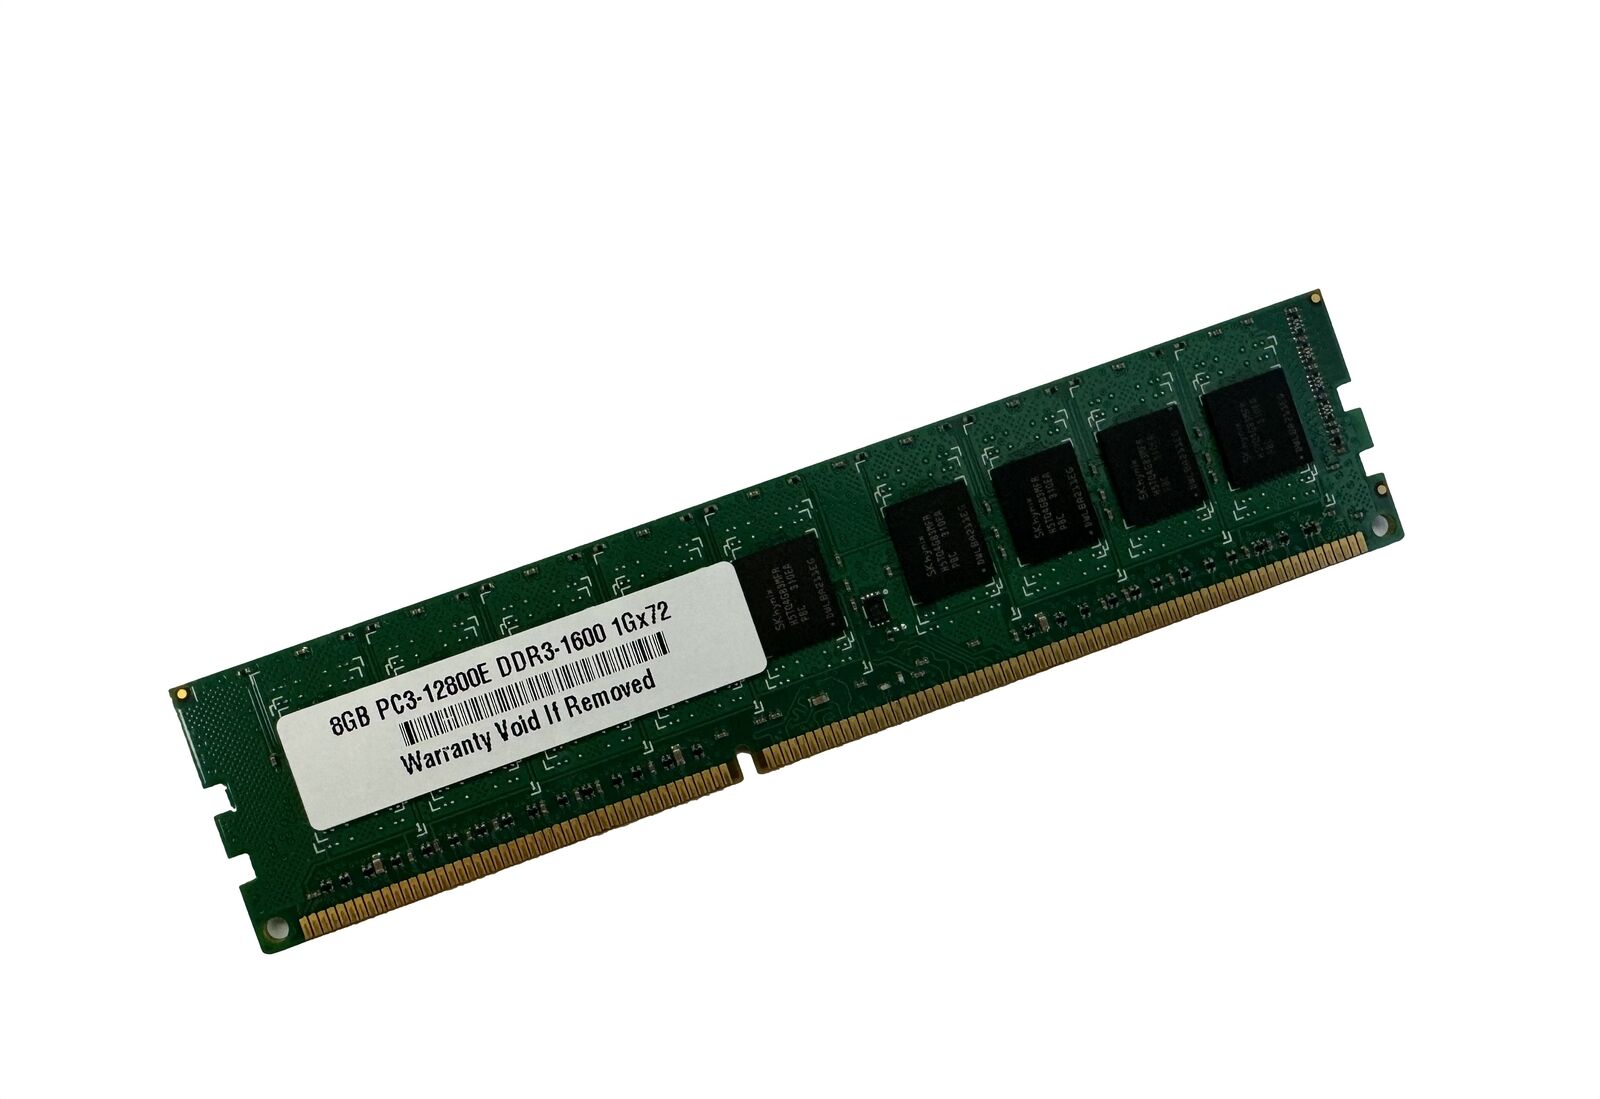 8GB Memory for Gigabyte GA-9SISL GA-X79S-UP5-WIFI DDR3 PC3-12800E ECC UDIMM RAM